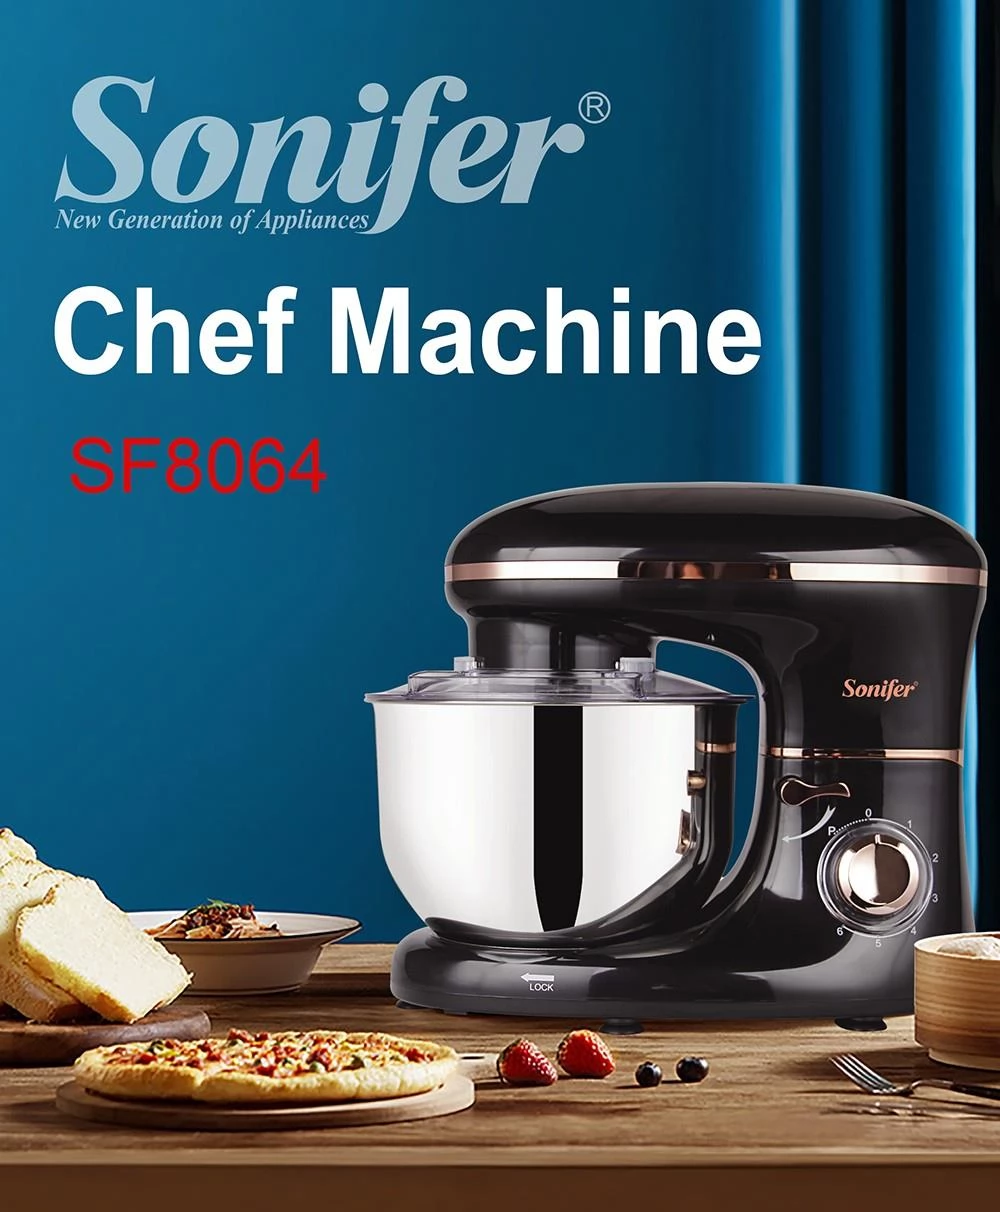 Sonifer SF8064 1400W Küchenmaschine mit Rührschüssel, Metallgetriebe & 3 Knethaken